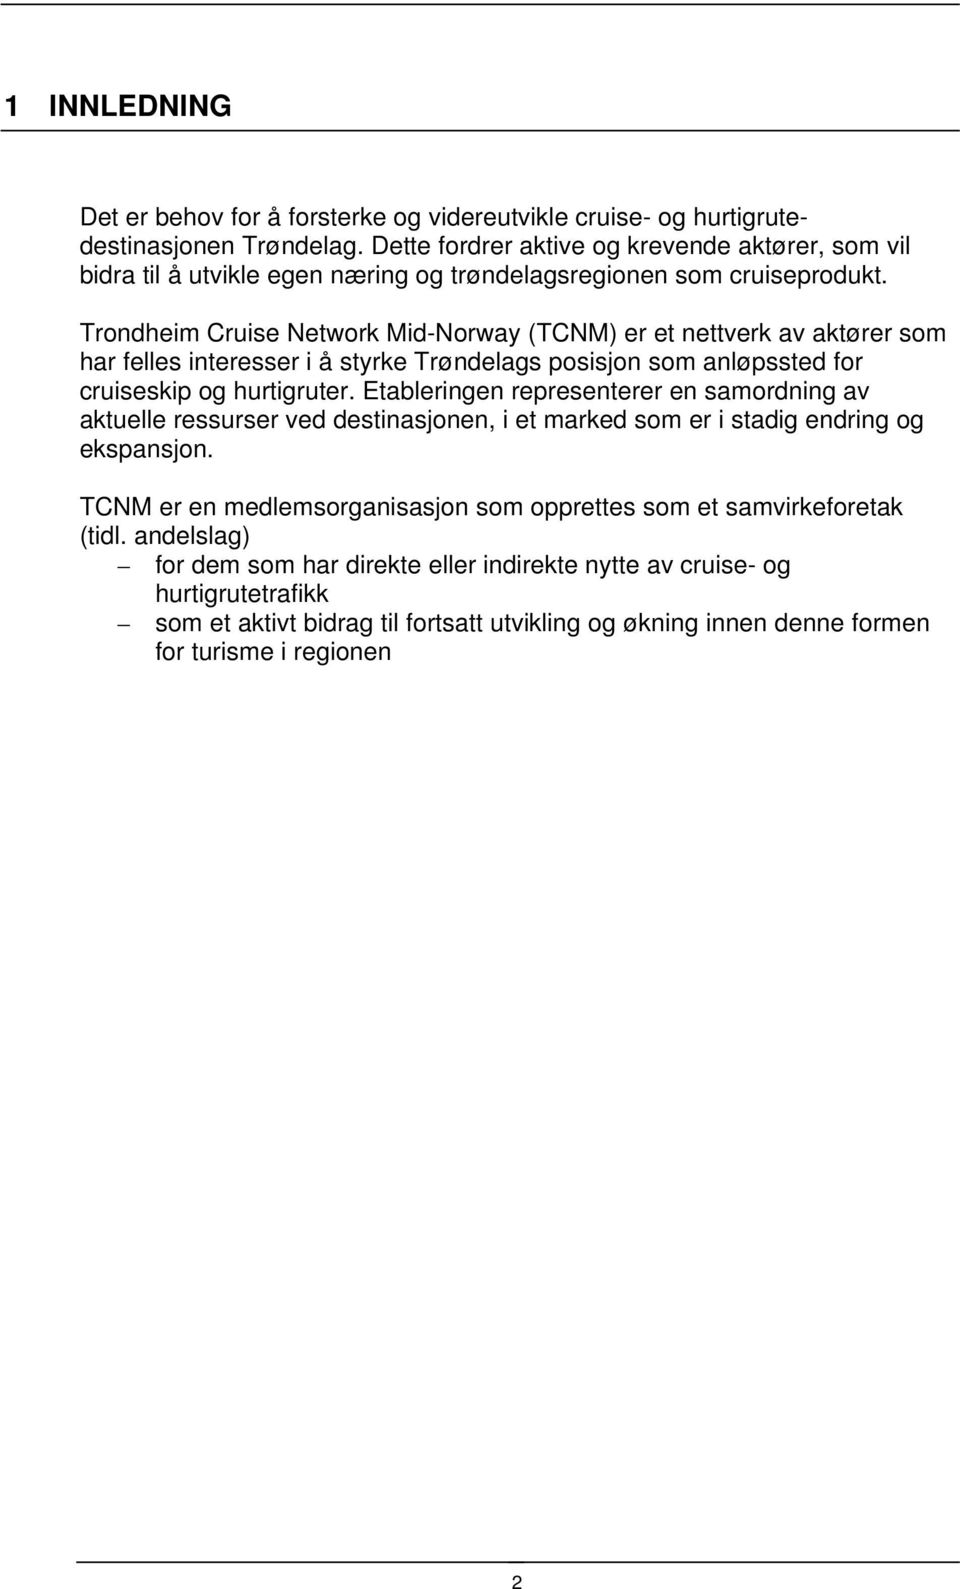 Trondheim Cruise Network Mid-Norway (TCNM) er et nettverk av aktører som har felles interesser i å styrke Trøndelags posisjon som anløpssted for cruiseskip og hurtigruter.